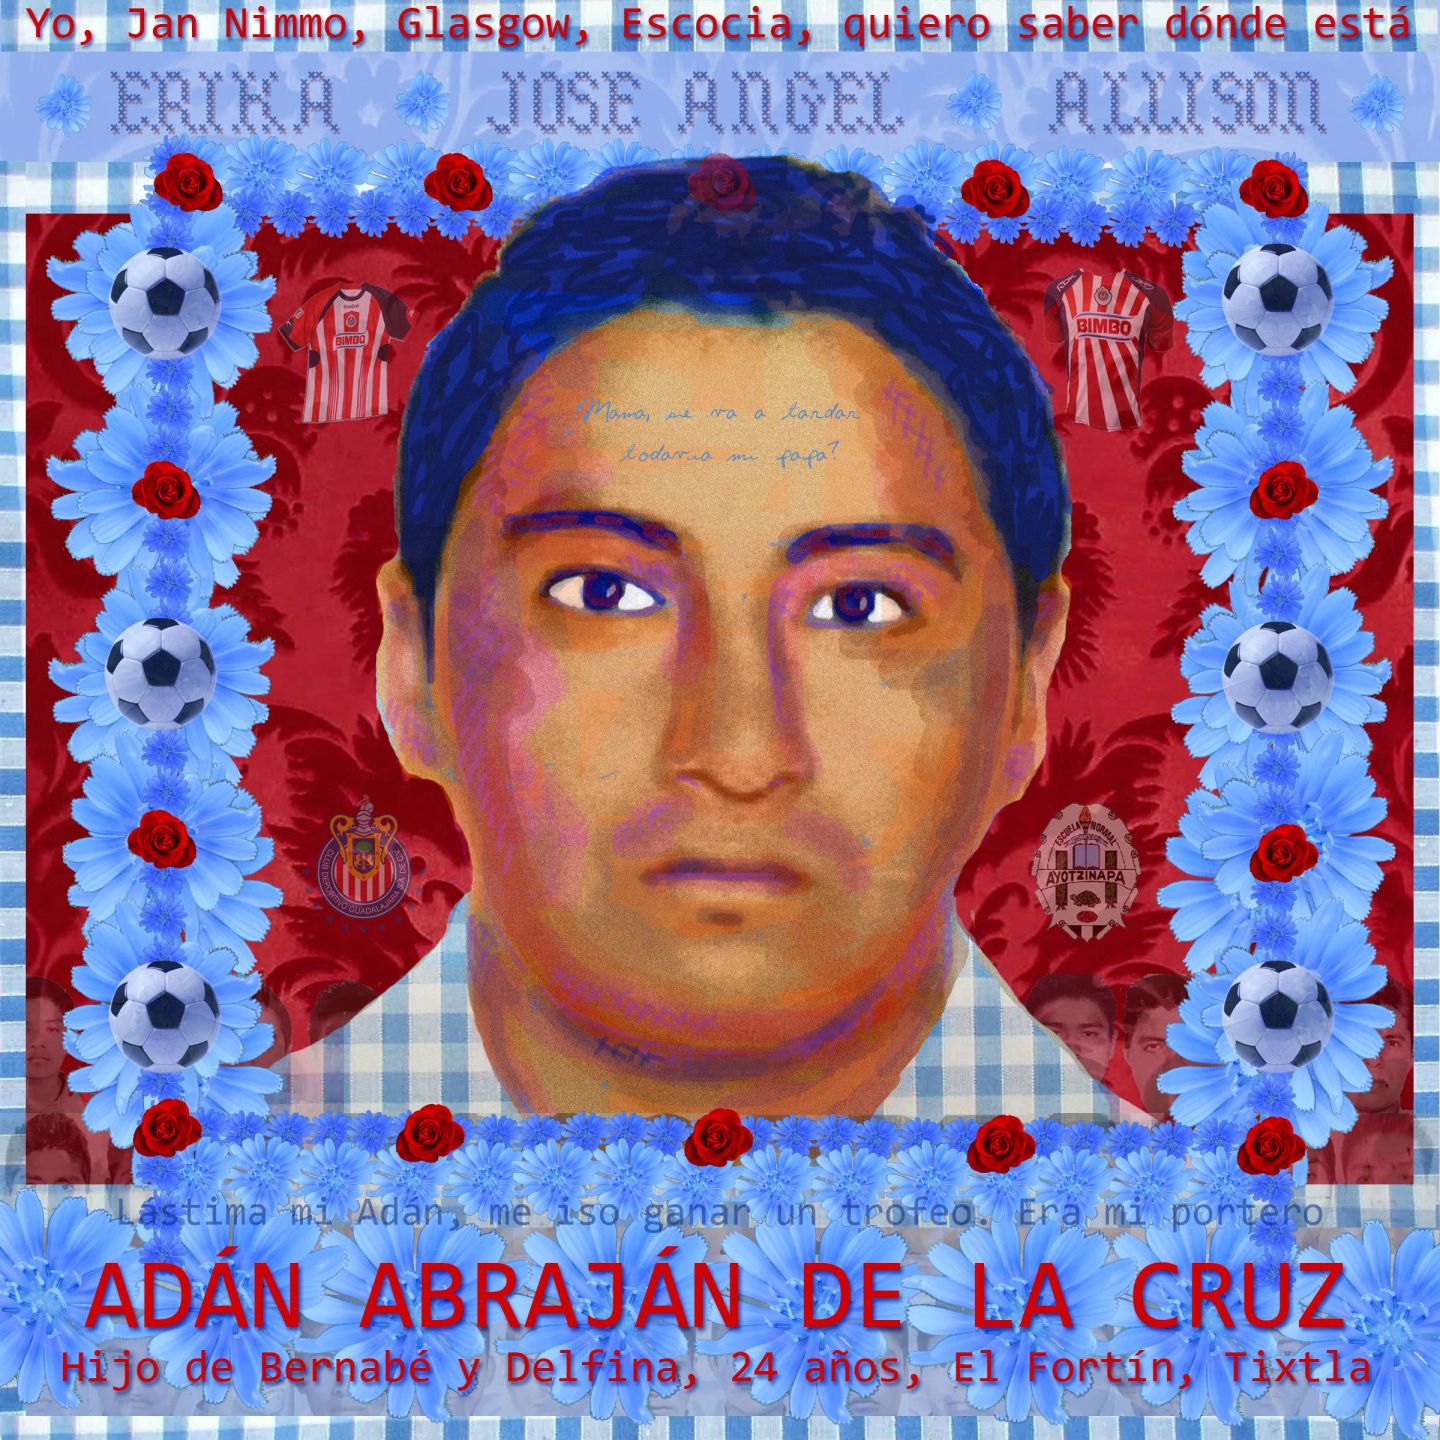 Portrait of Adan Abrajan de la Cruz by Jan Nimo